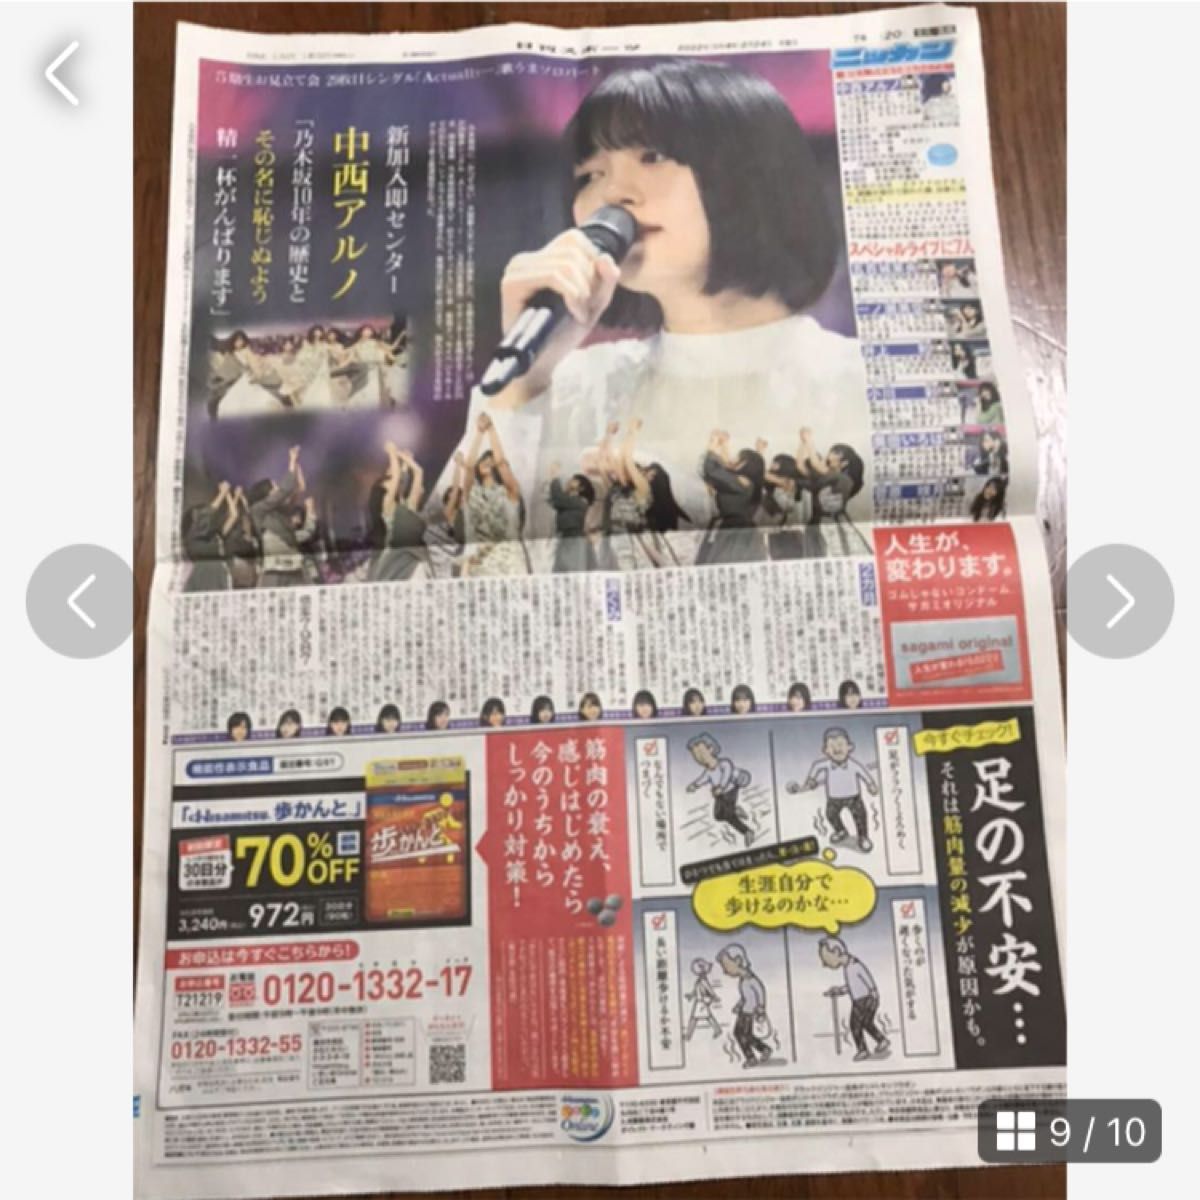 乃木坂46 新聞広告12枚セット